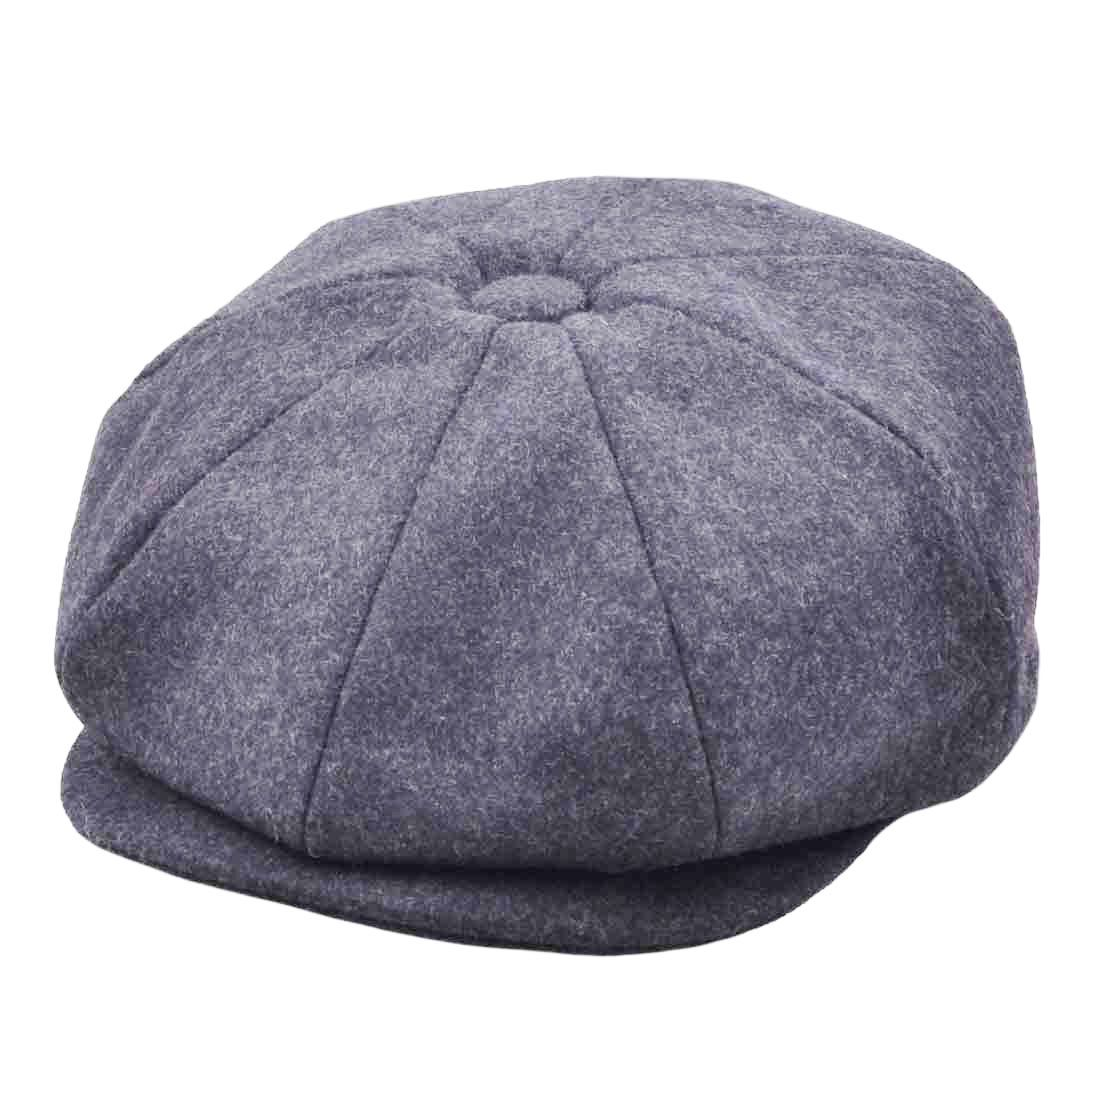 Wool Newsboy Cap Classic Button Top Baker Boy Hat